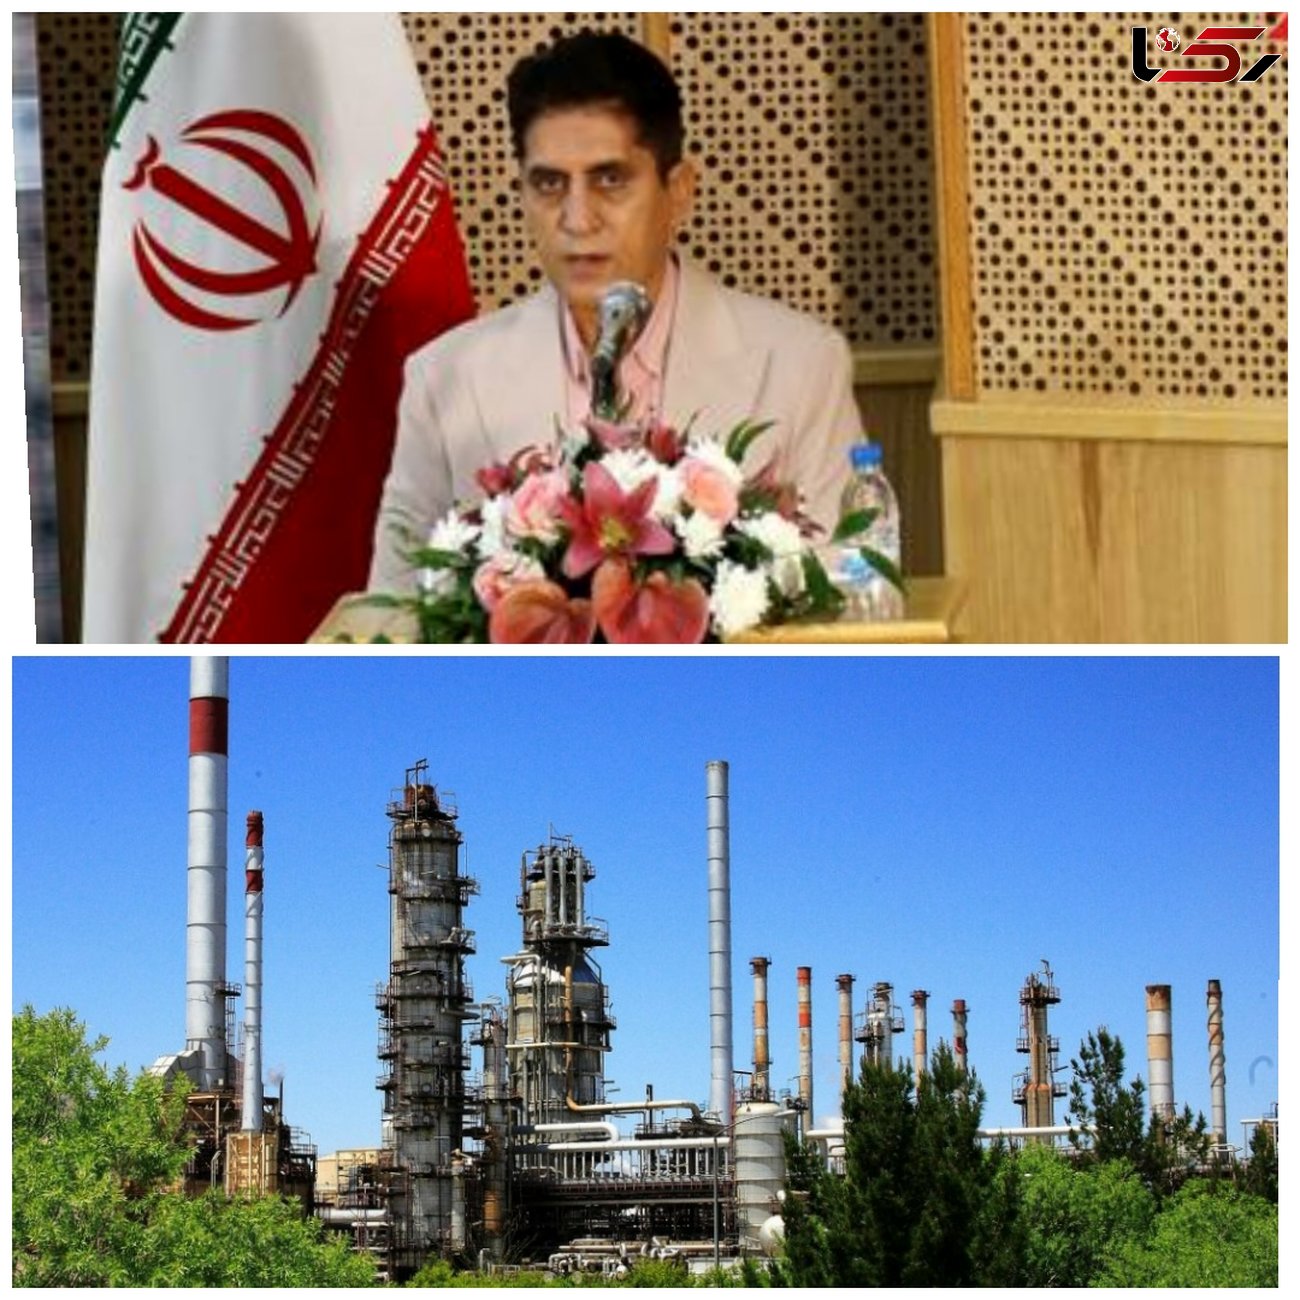 بلوغ سازمانی پالایشگاه اصفهان، از سطح ۳ به سطح ۴ ارتقاء می یابد/ اهداف استراتژیک شرکت